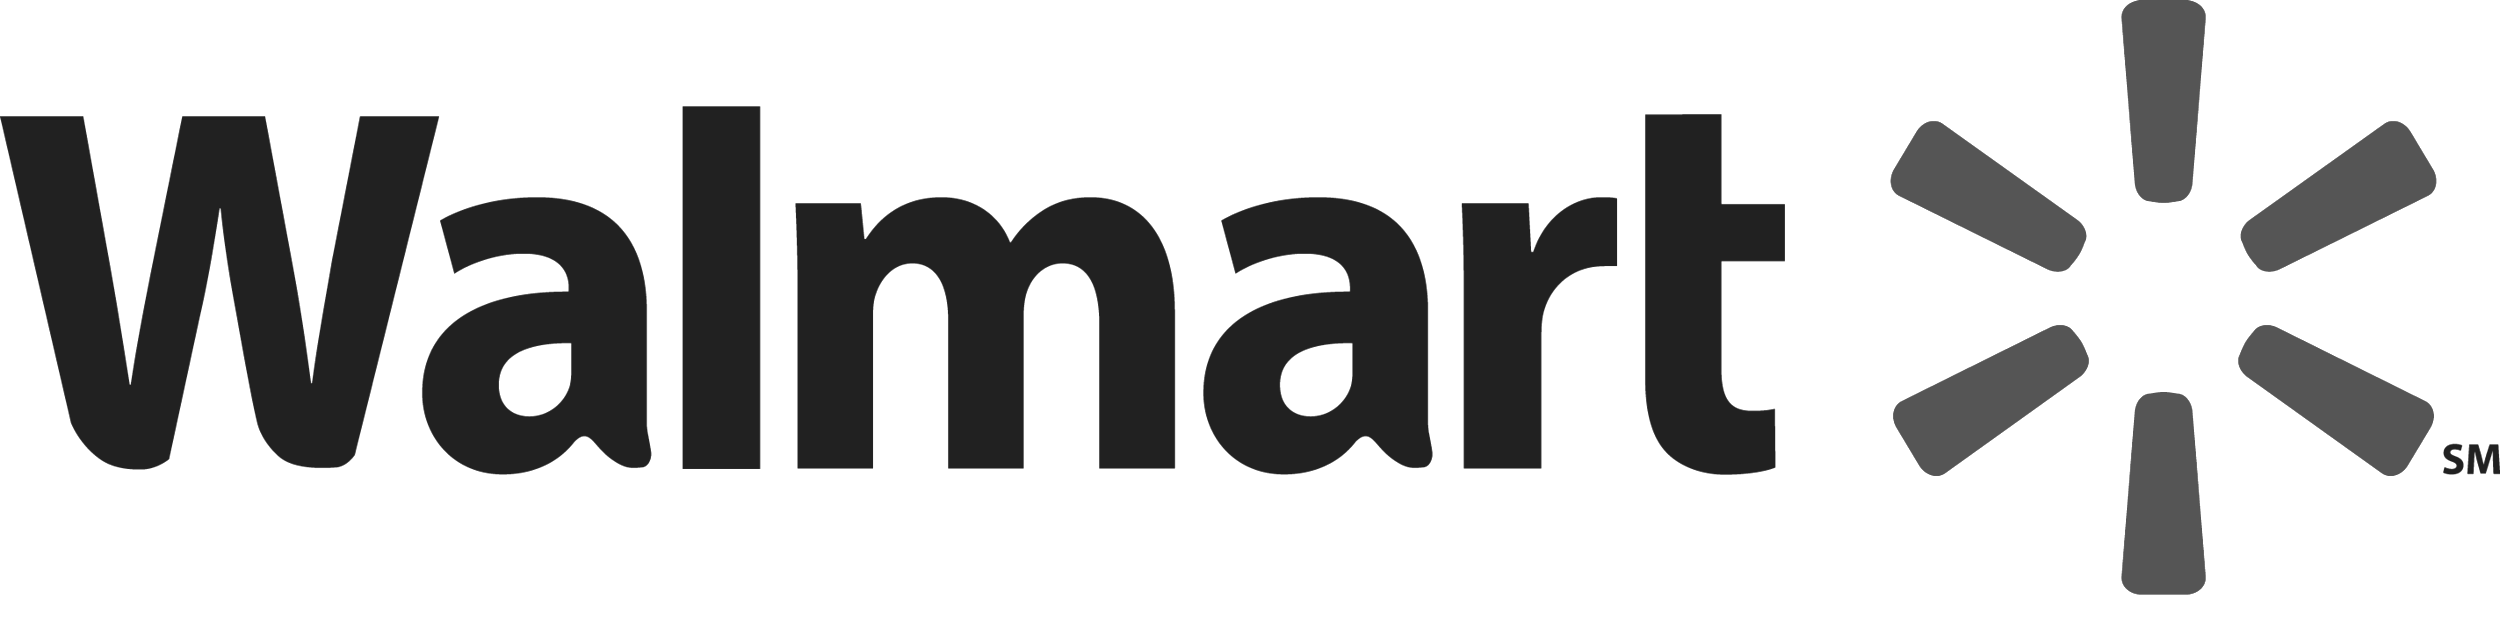 Walmart_Logo.png